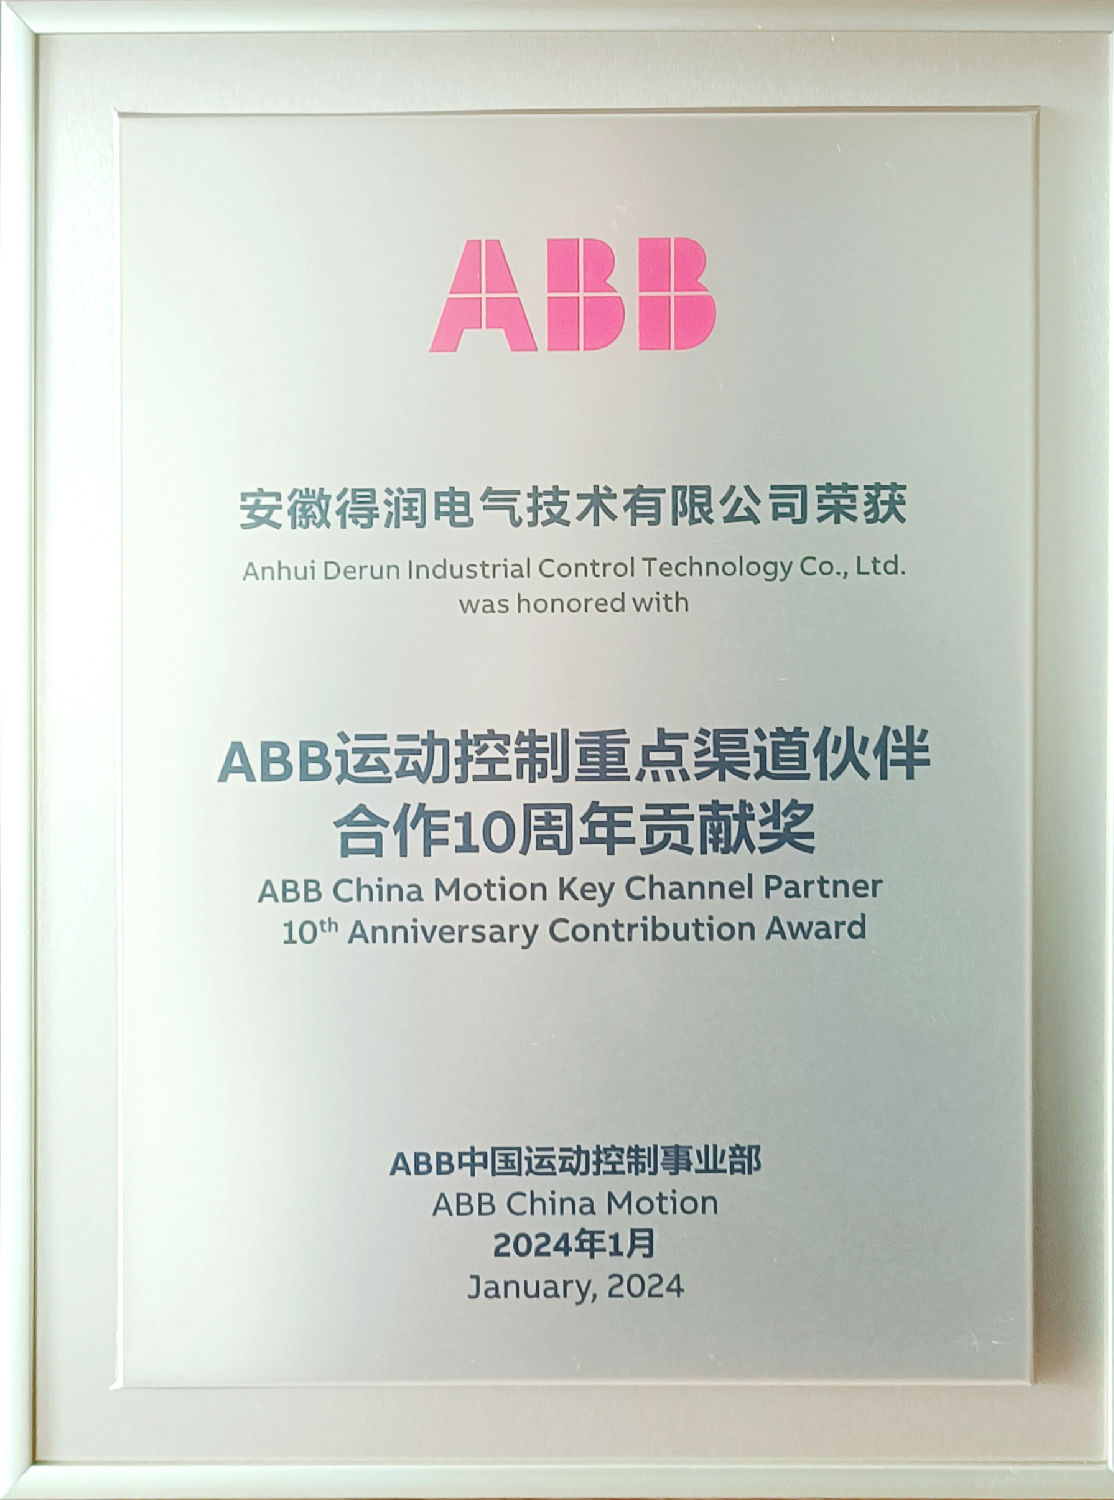 得潤電氣榮獲ABB運動控制重點渠道伙伴合作10周年貢獻獎